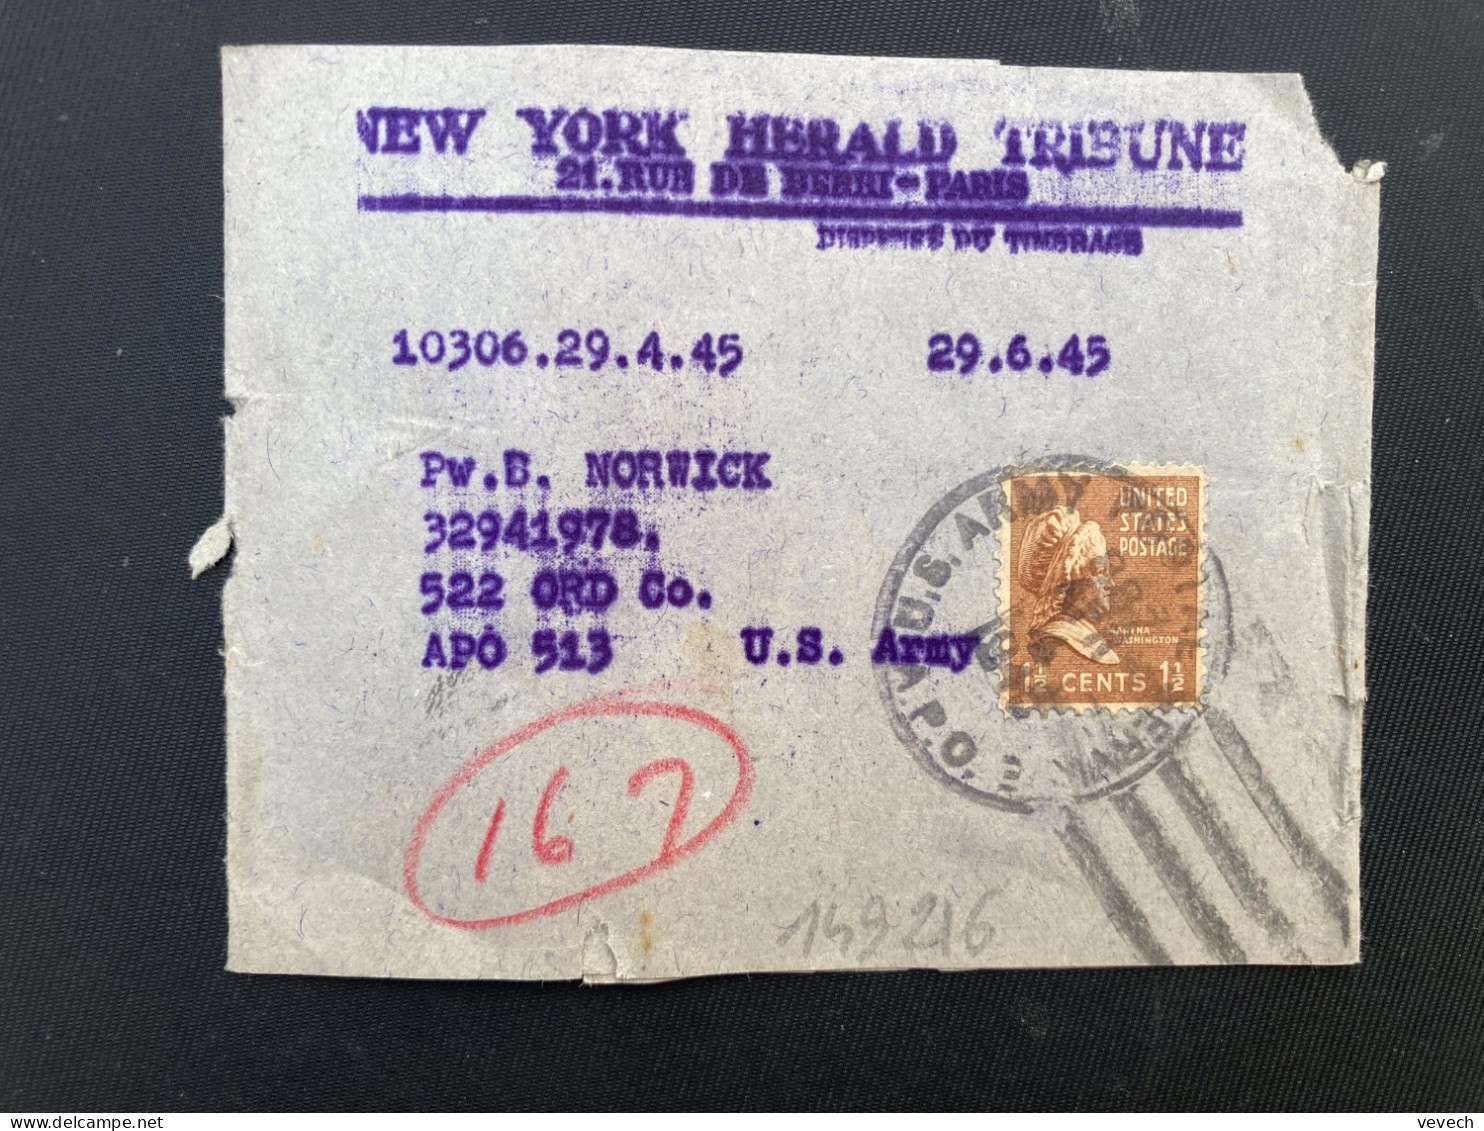 BJ NEW YORK HERALD TRIBUNE Pour APO 513 TP WASHINGTON 1 1/2c OBL.MEC.APR 4 1945 APO 3 - Postal History